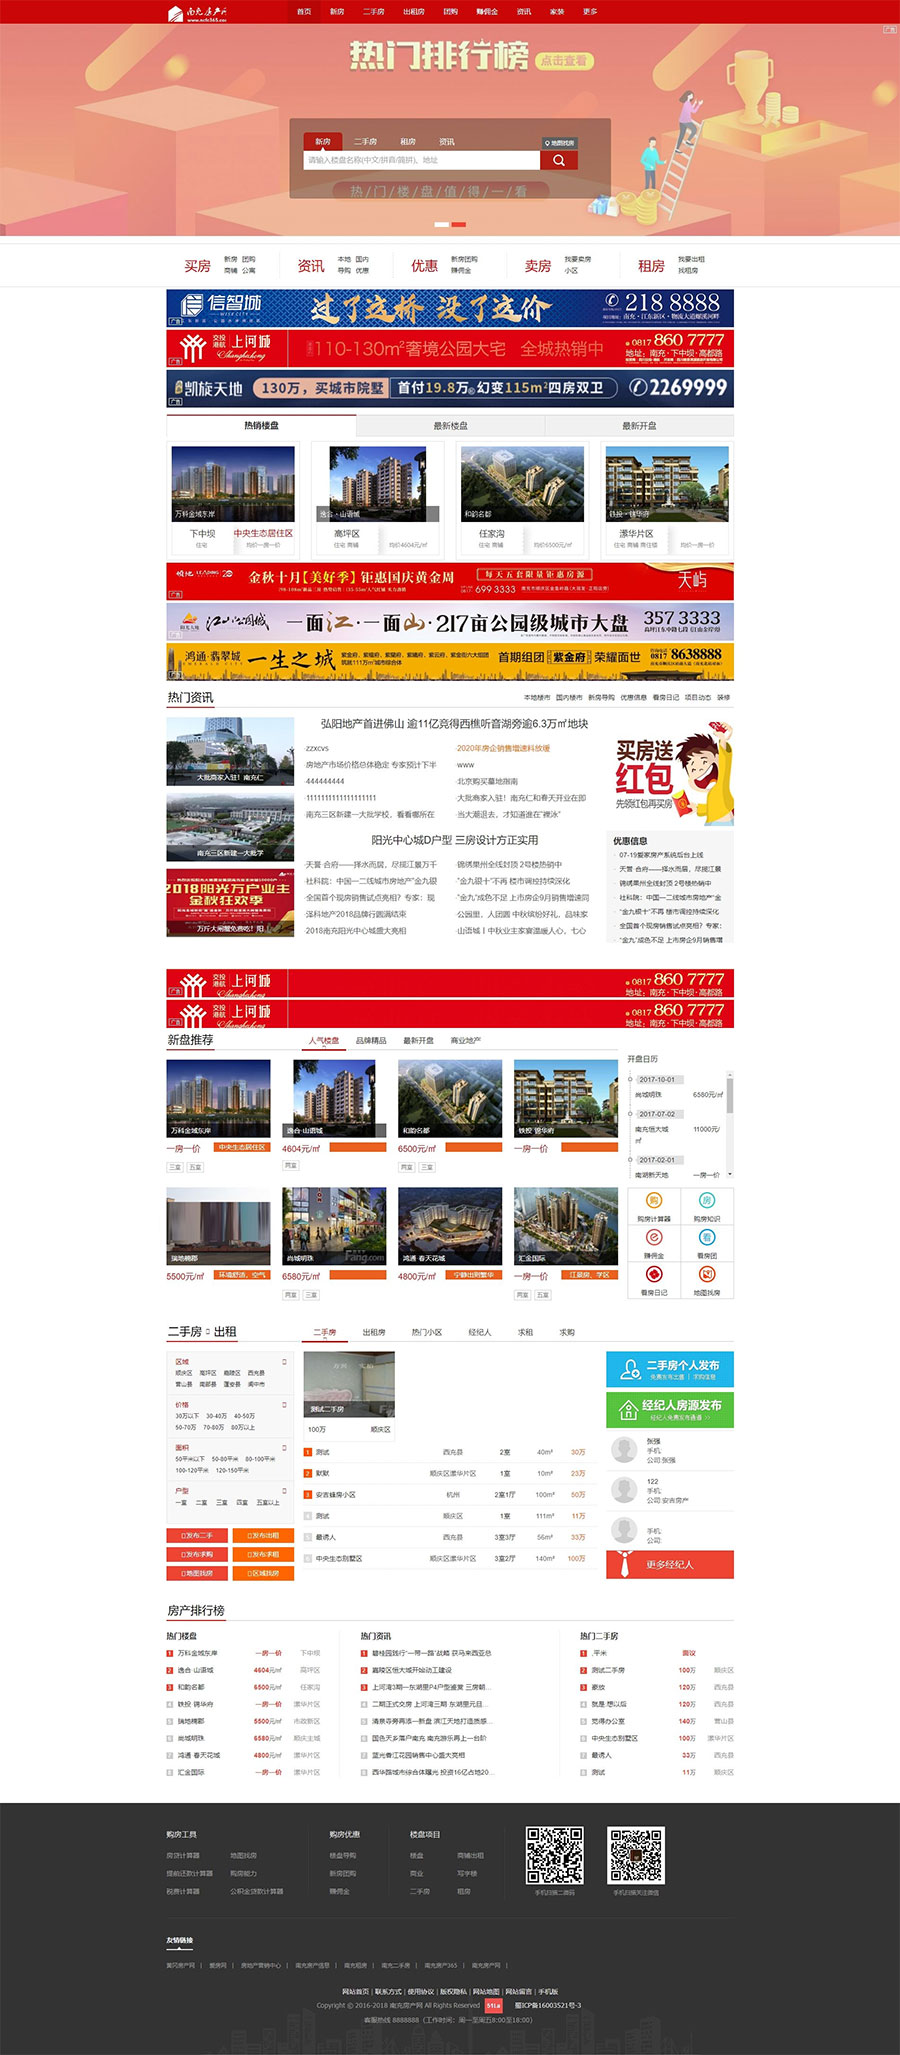 红色高端房产门户系统_爱家Aijiacms大型房产门户网站源码V9-1